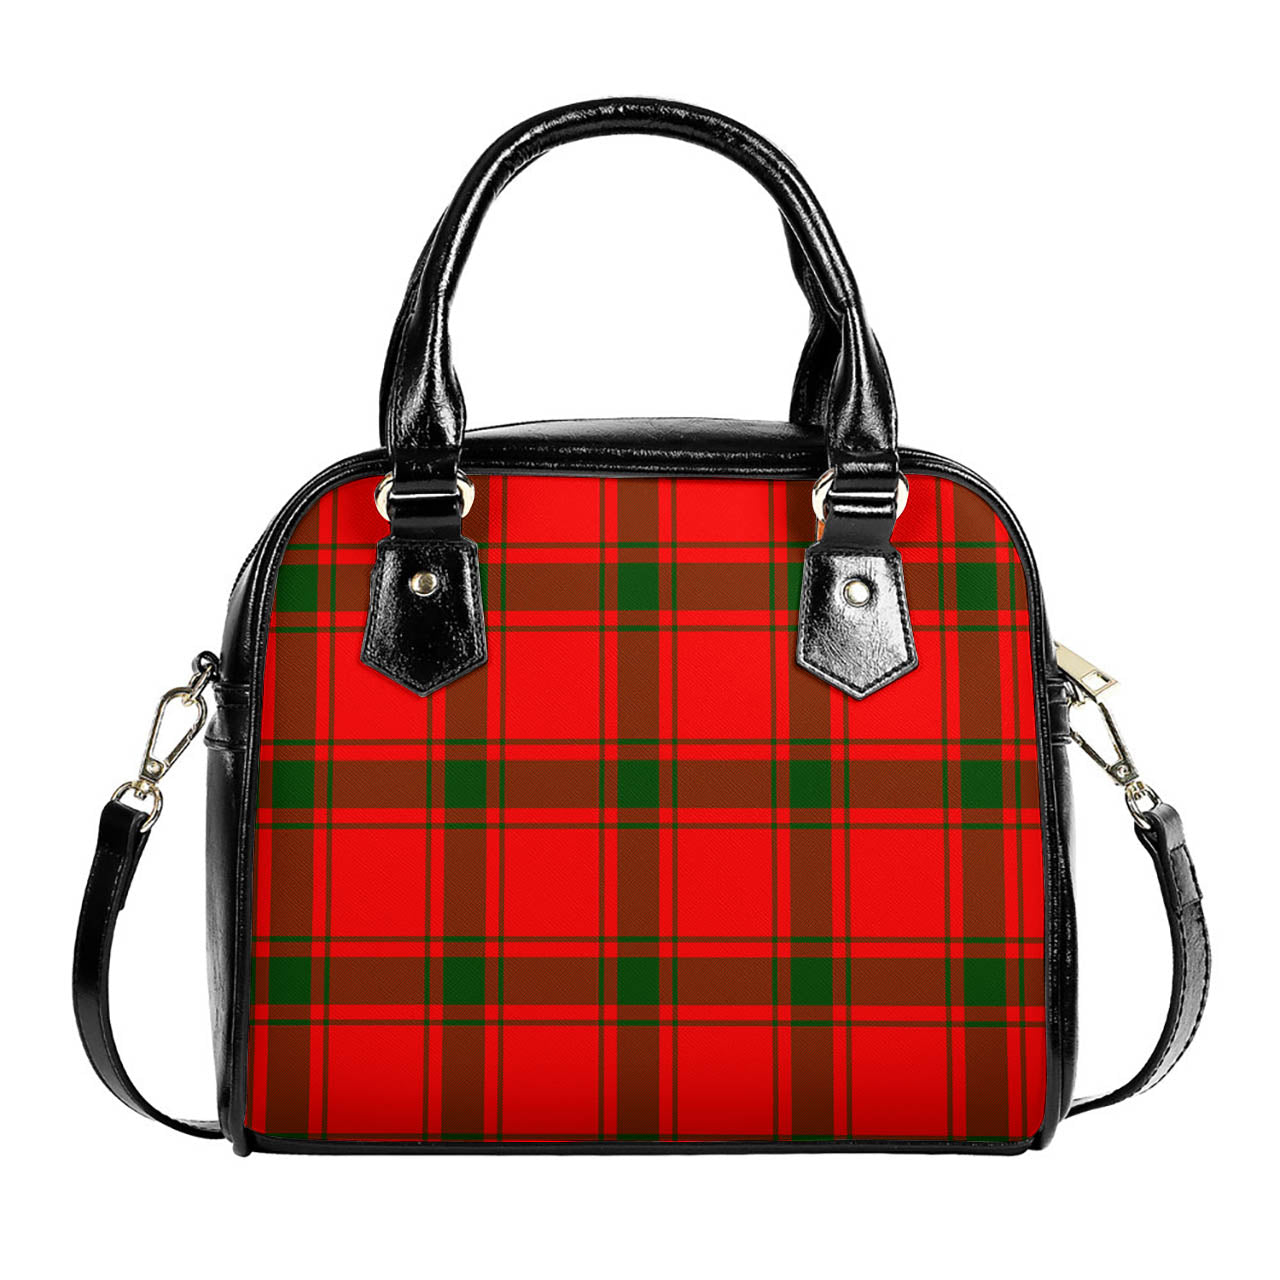 Darroch Tartan Shoulder Handbags One Size 6*25*22 cm - Tartanvibesclothing